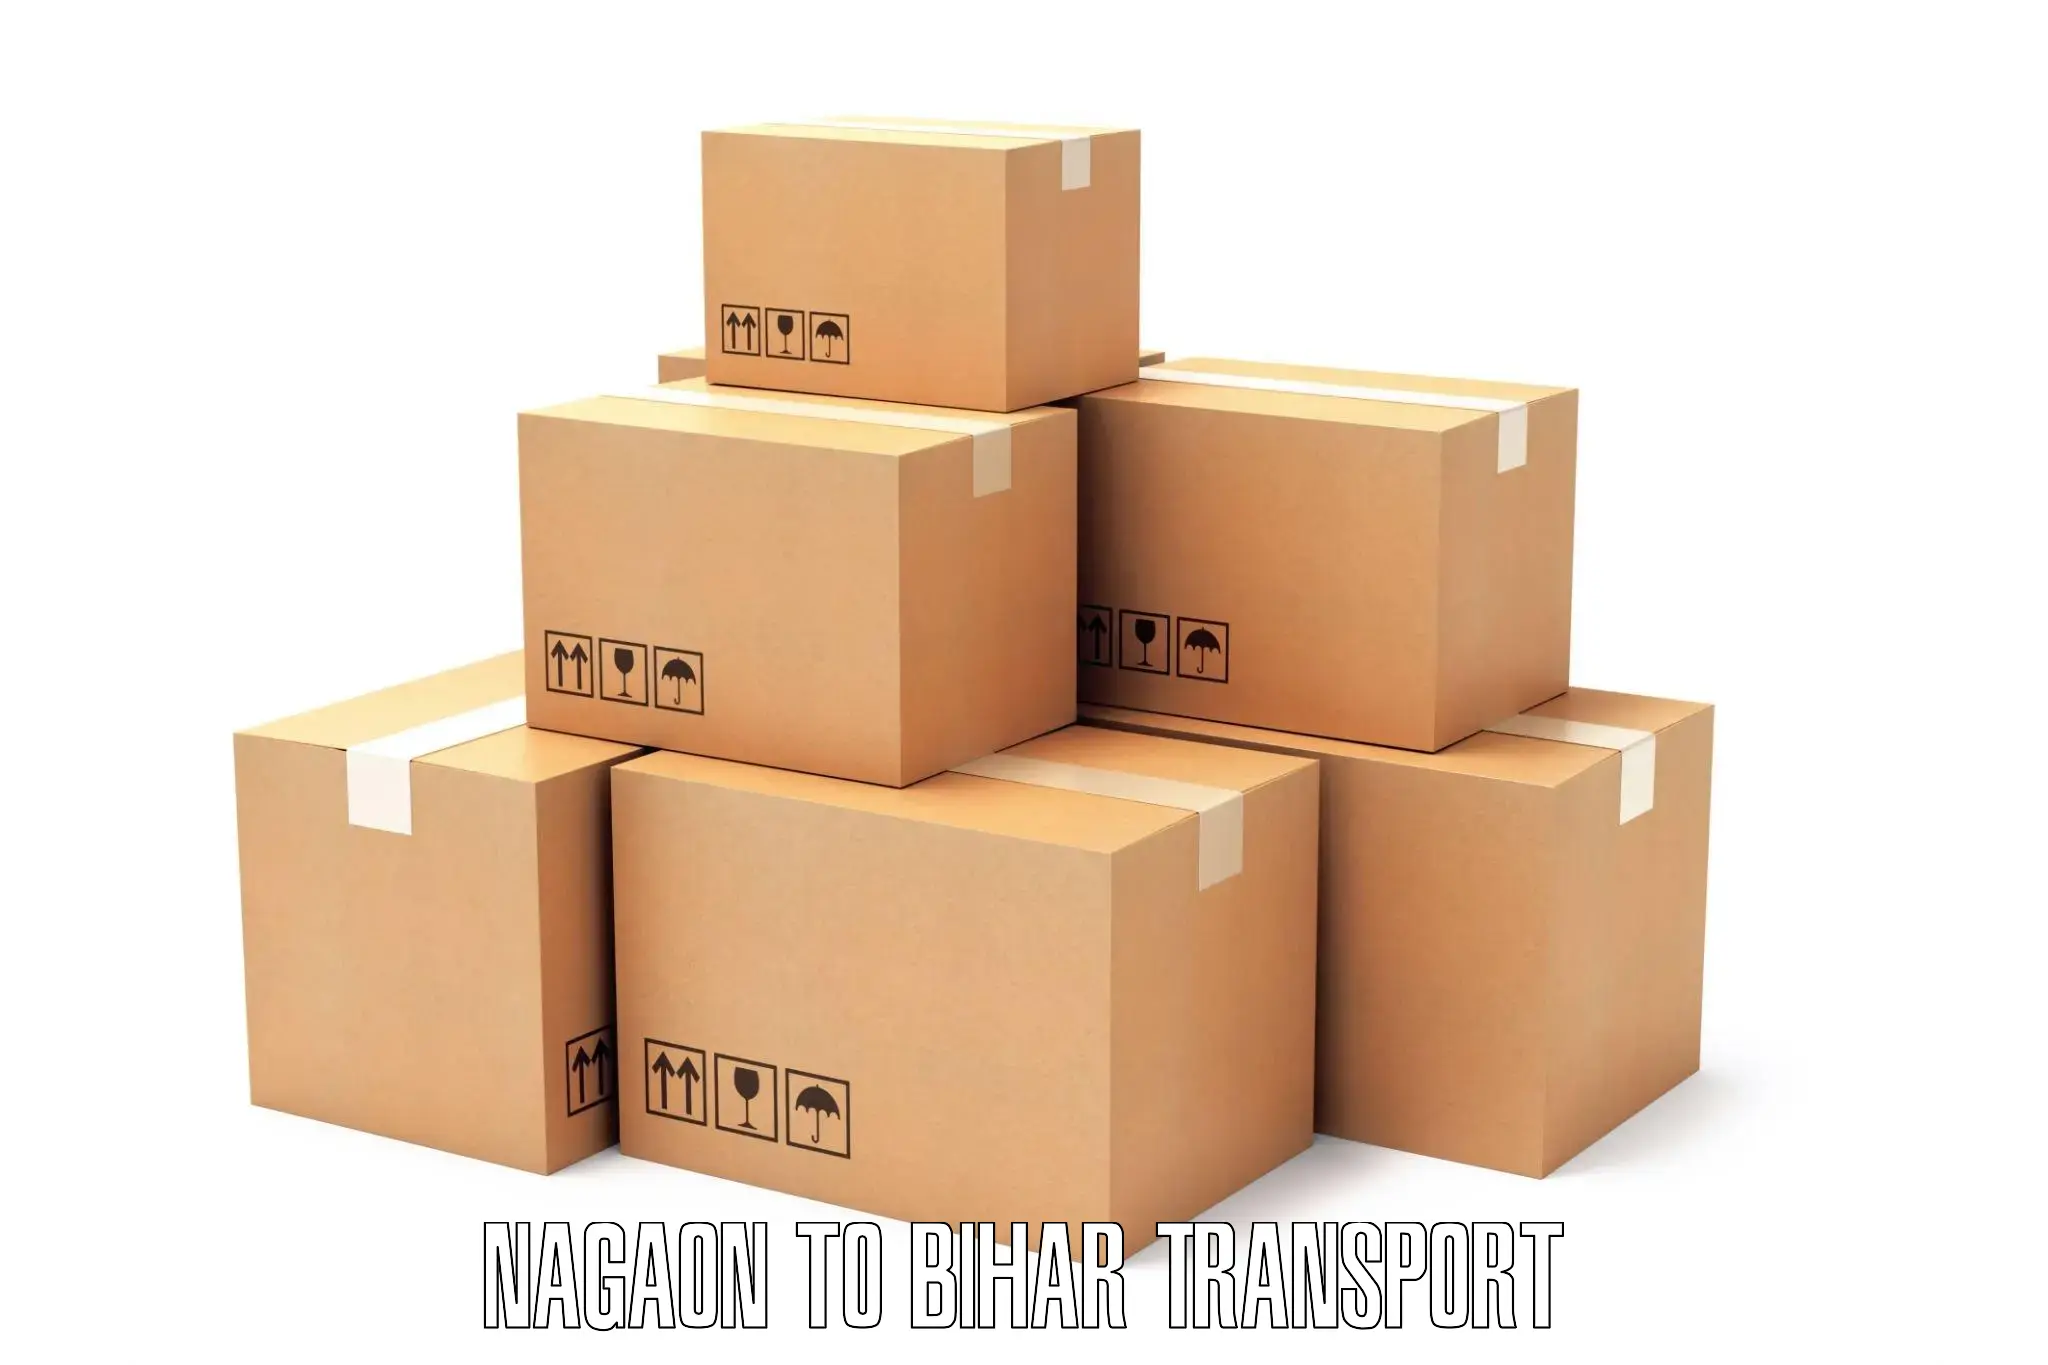 Container transport service Nagaon to Malmaliya